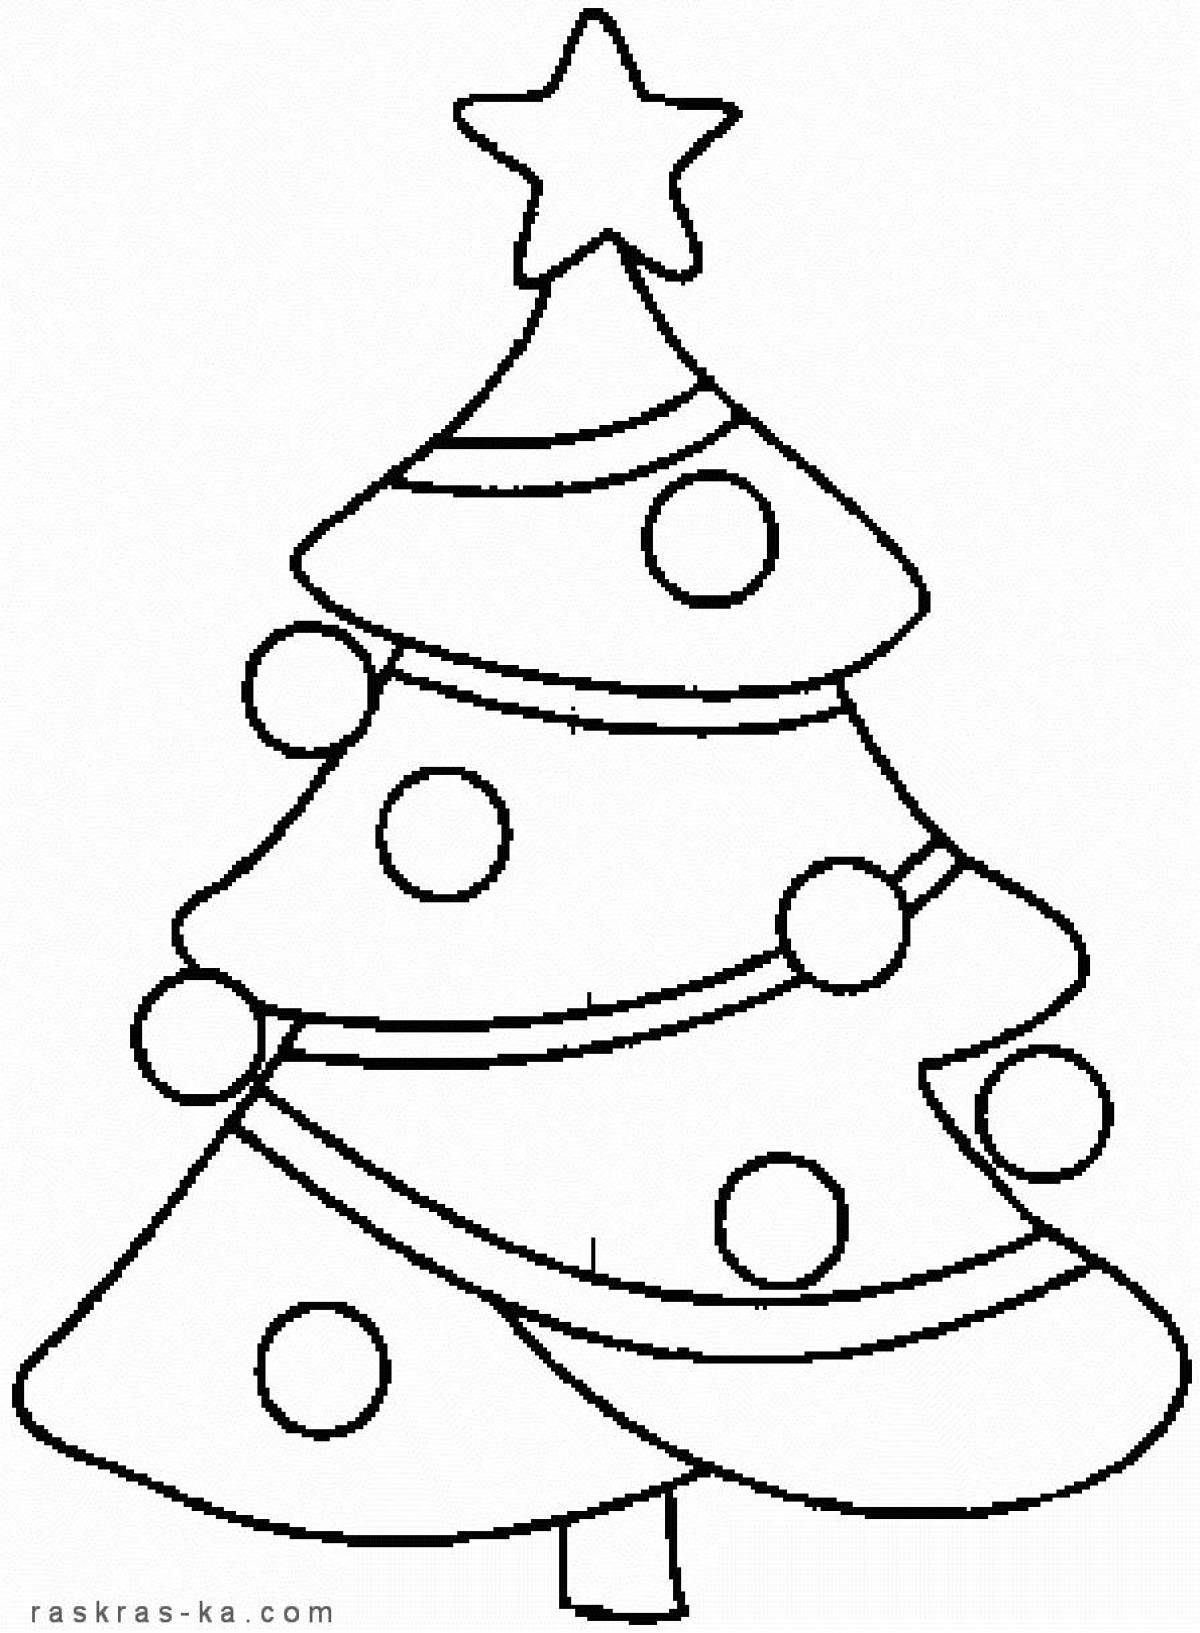 Раскраска новогодняя ветка елки и игрушки распечатать на А4 бесплатно